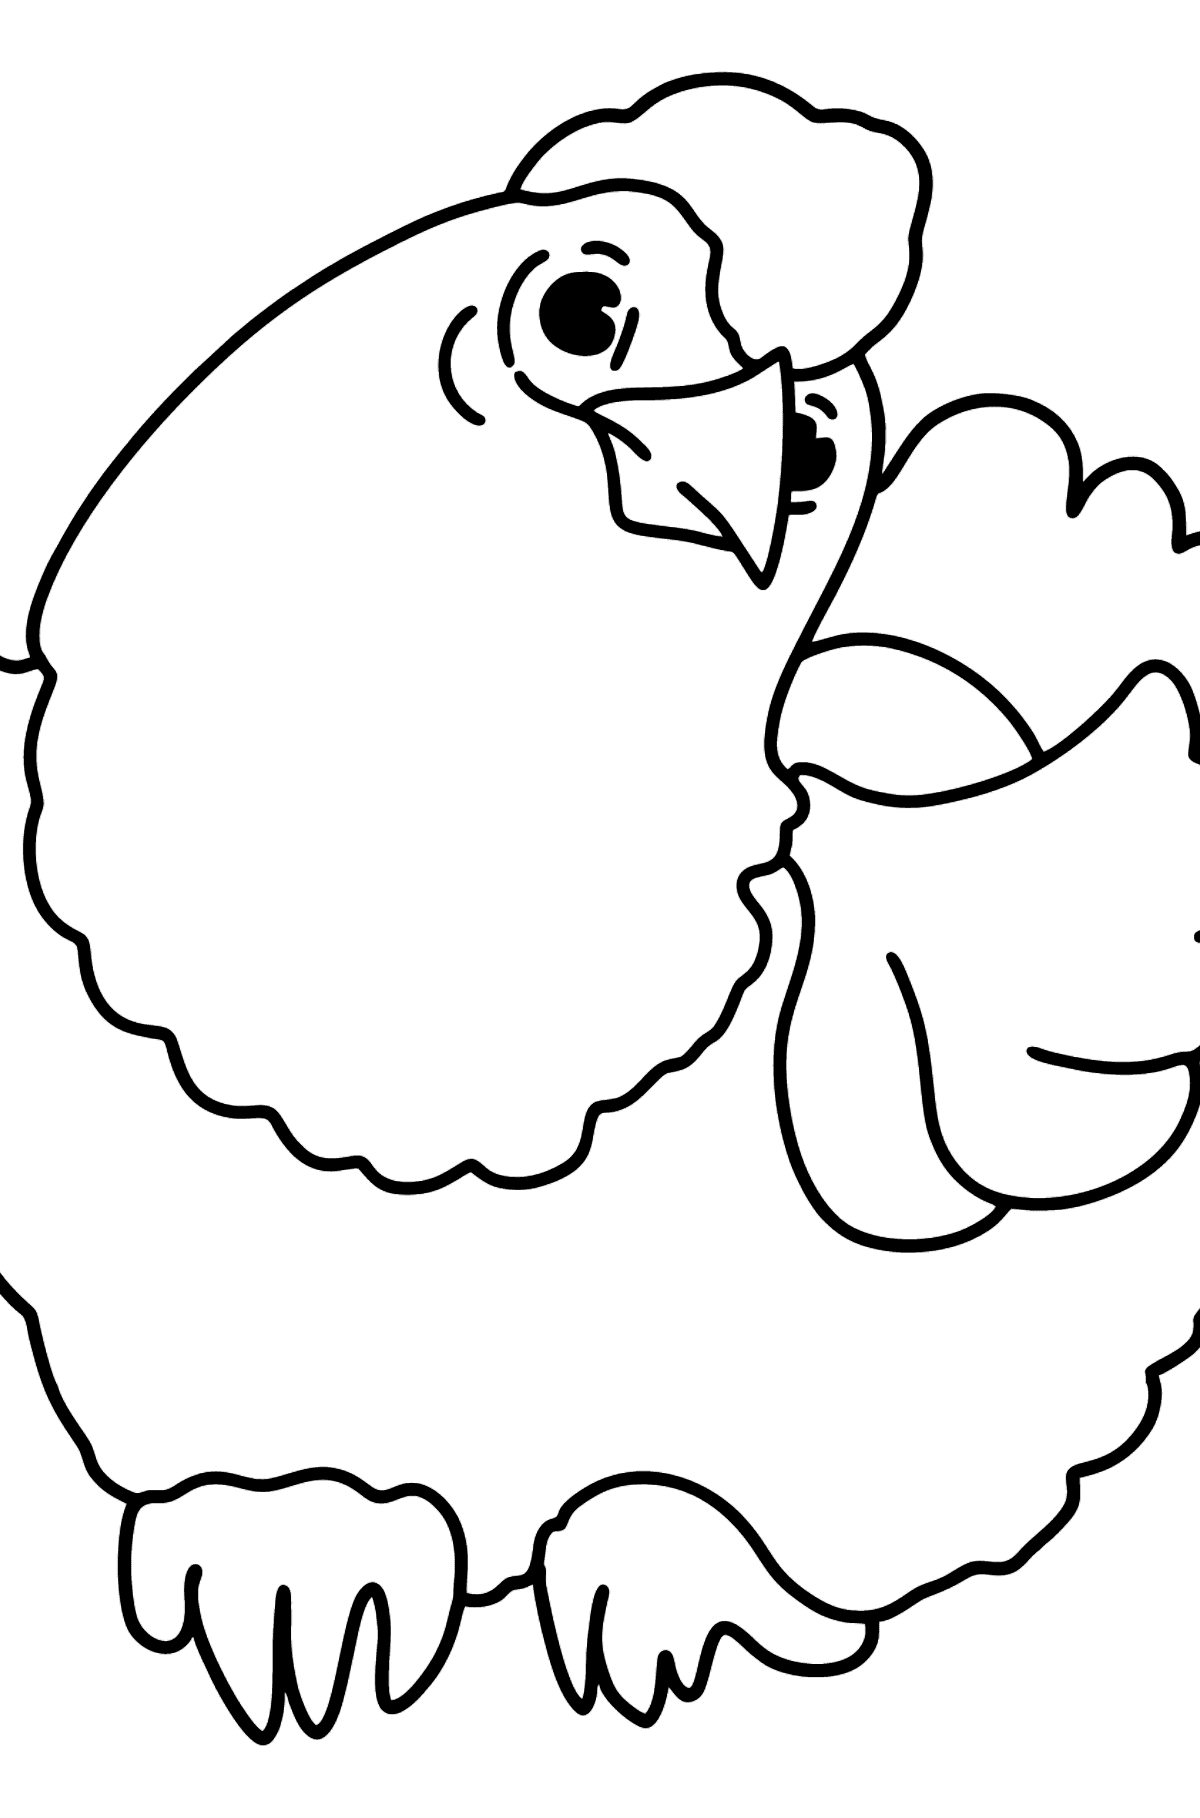 Sød høne tegning til farvning - Tegninger til farvelægning for børn